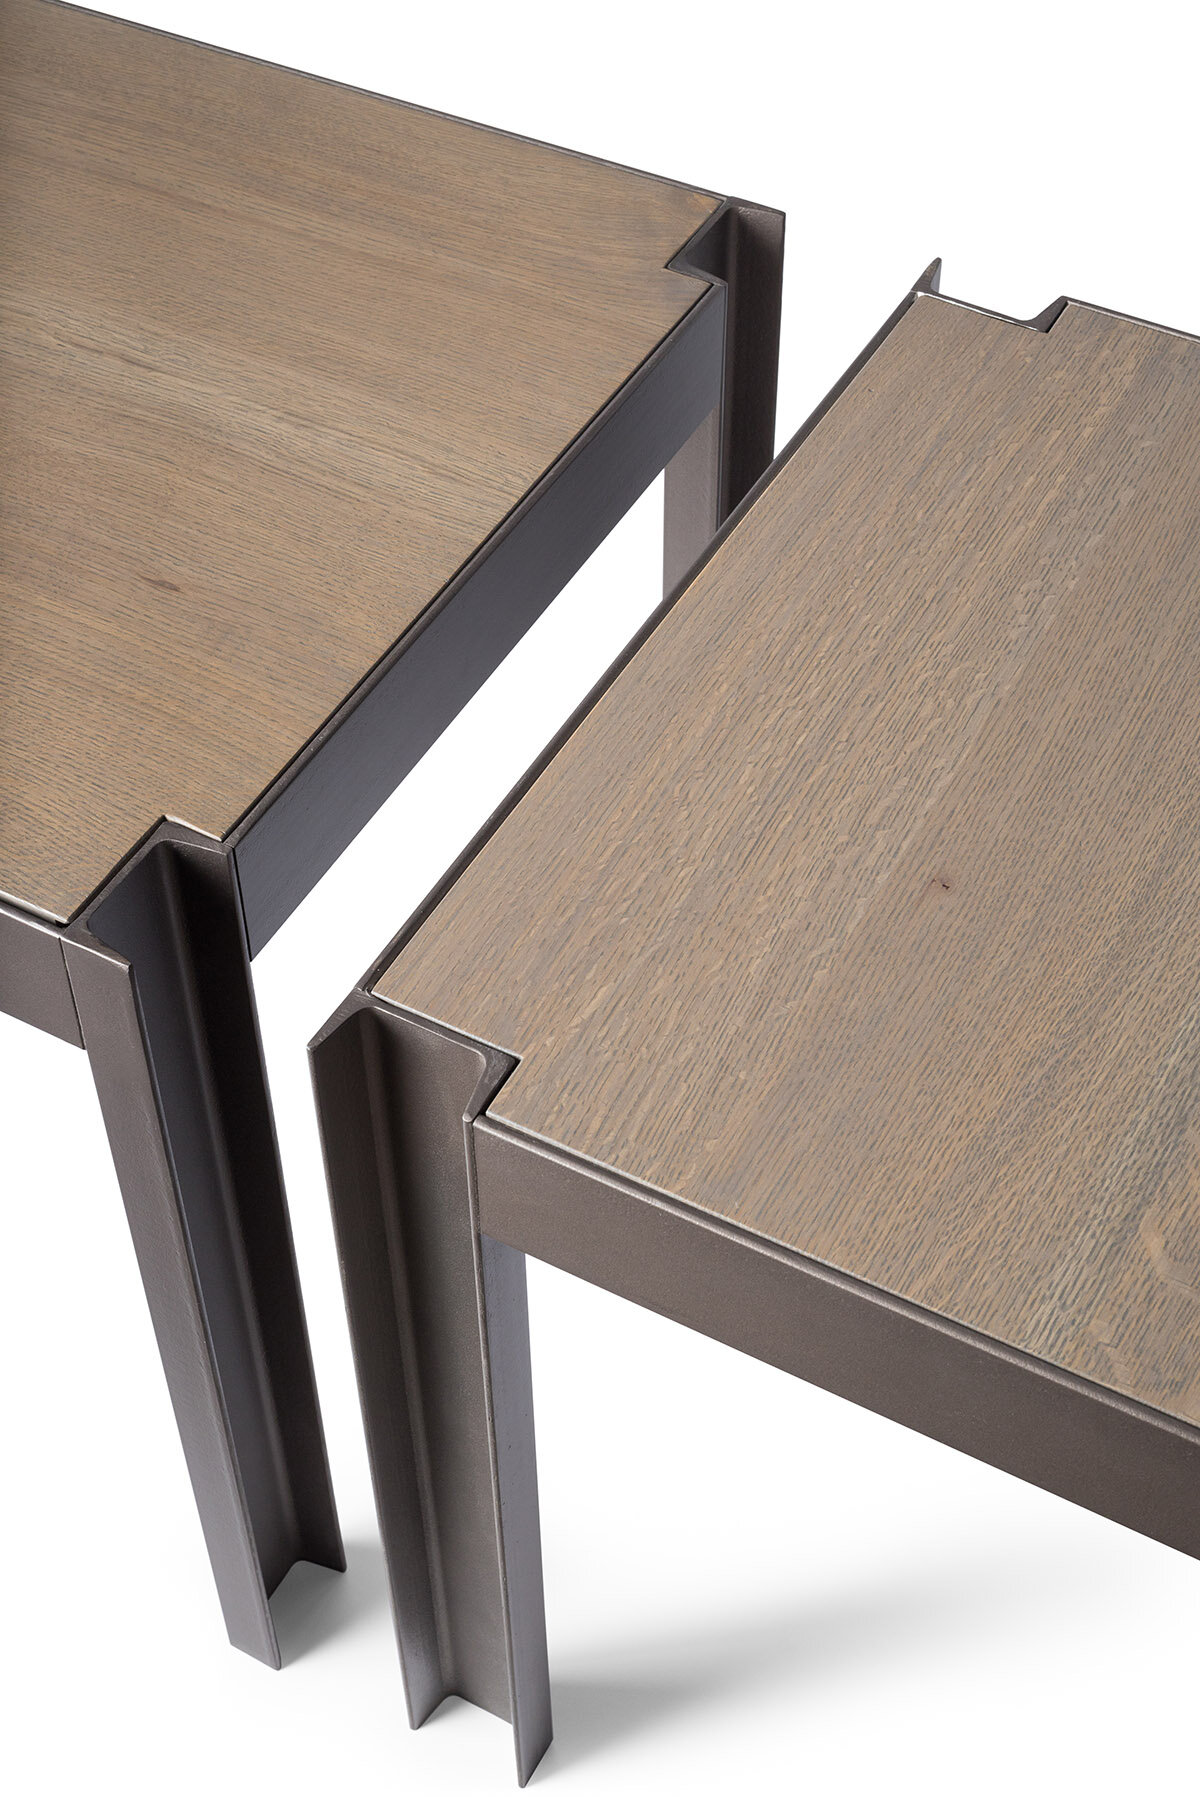 Reduced_EK-Reedy_Furniture_Tram_Side_Table_Luxury_Handmade_Modern_Steel_Walnut_Oak_Details.jpg